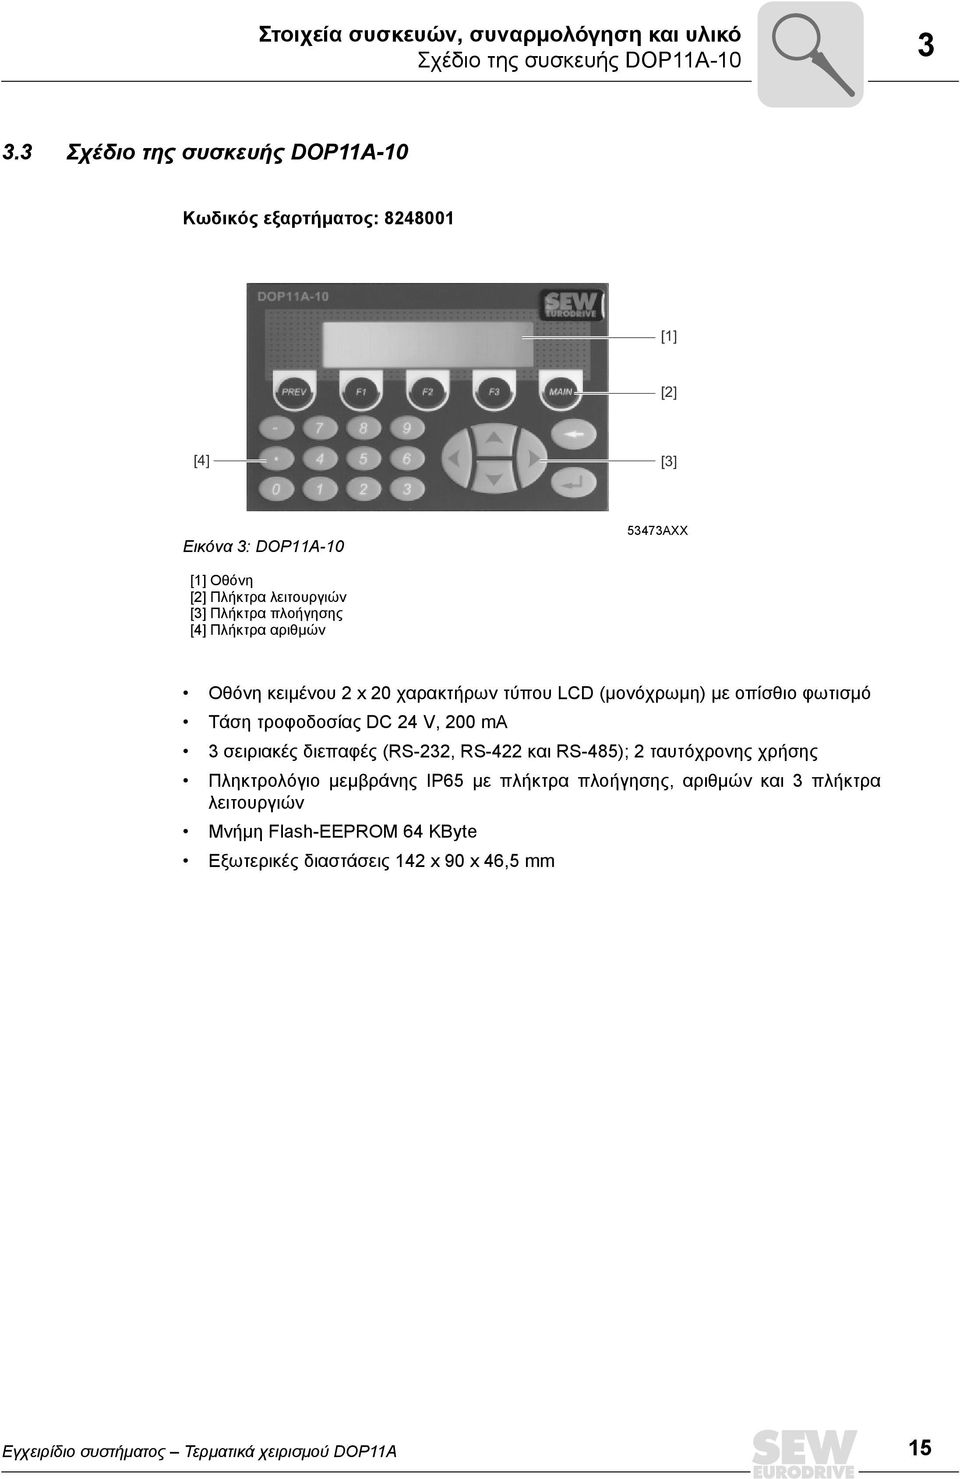 [4] Πλήκτρα αριθµών Οθόνη κειµένου 2 x 2 χαρακτήρων τύπου LCD (µονόχρωµη) µε οπίσθιο φωτισµό Τάση τροφοδοσίας DC 24 V, 2 ma 3 σειριακές διεπαφές (RS-232,